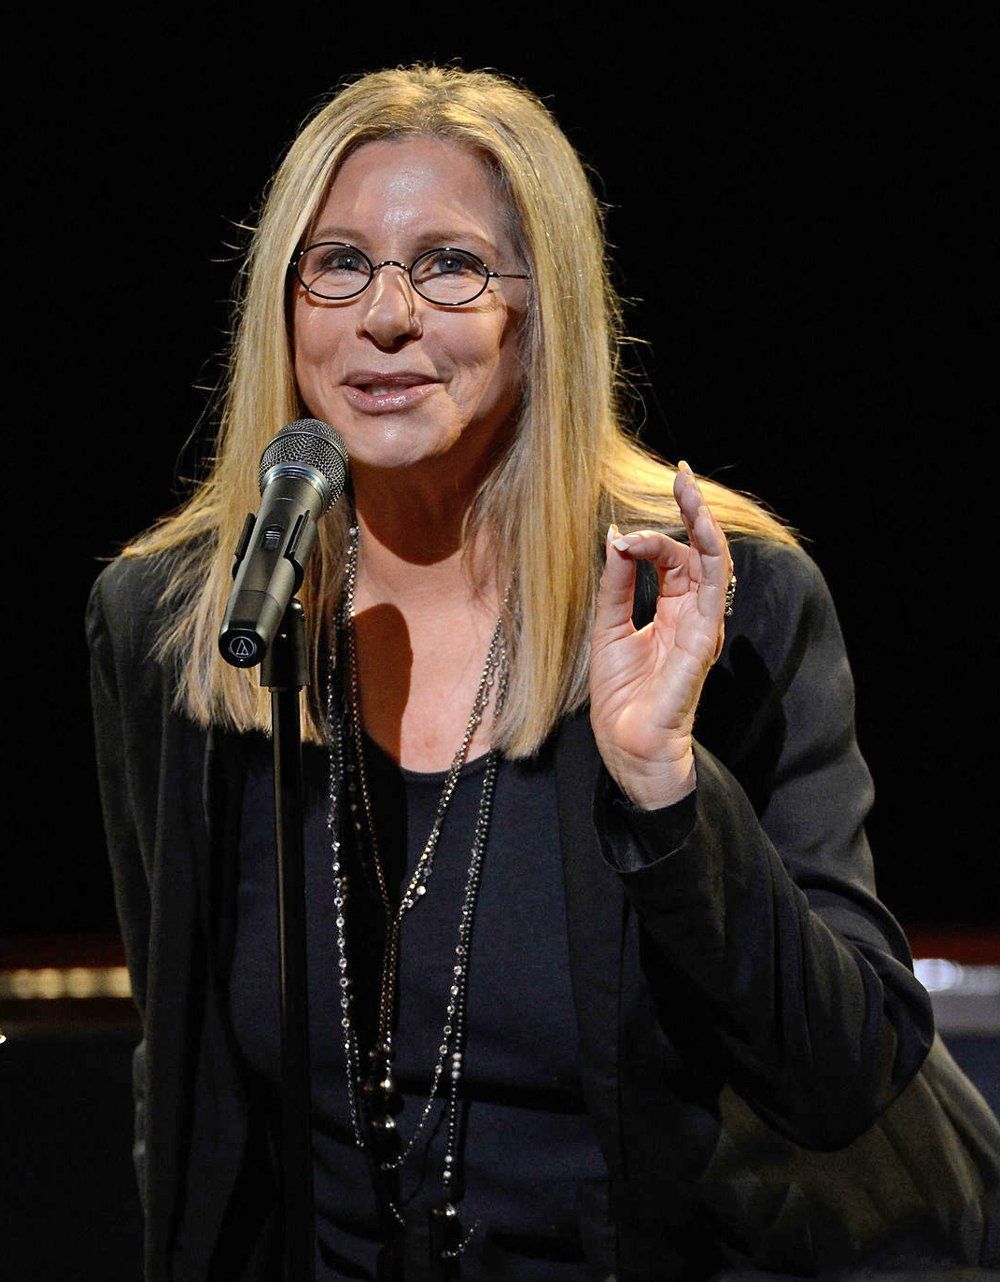 Streisand speaks at Hamlisch memorial. Photo by Kevin Mazur